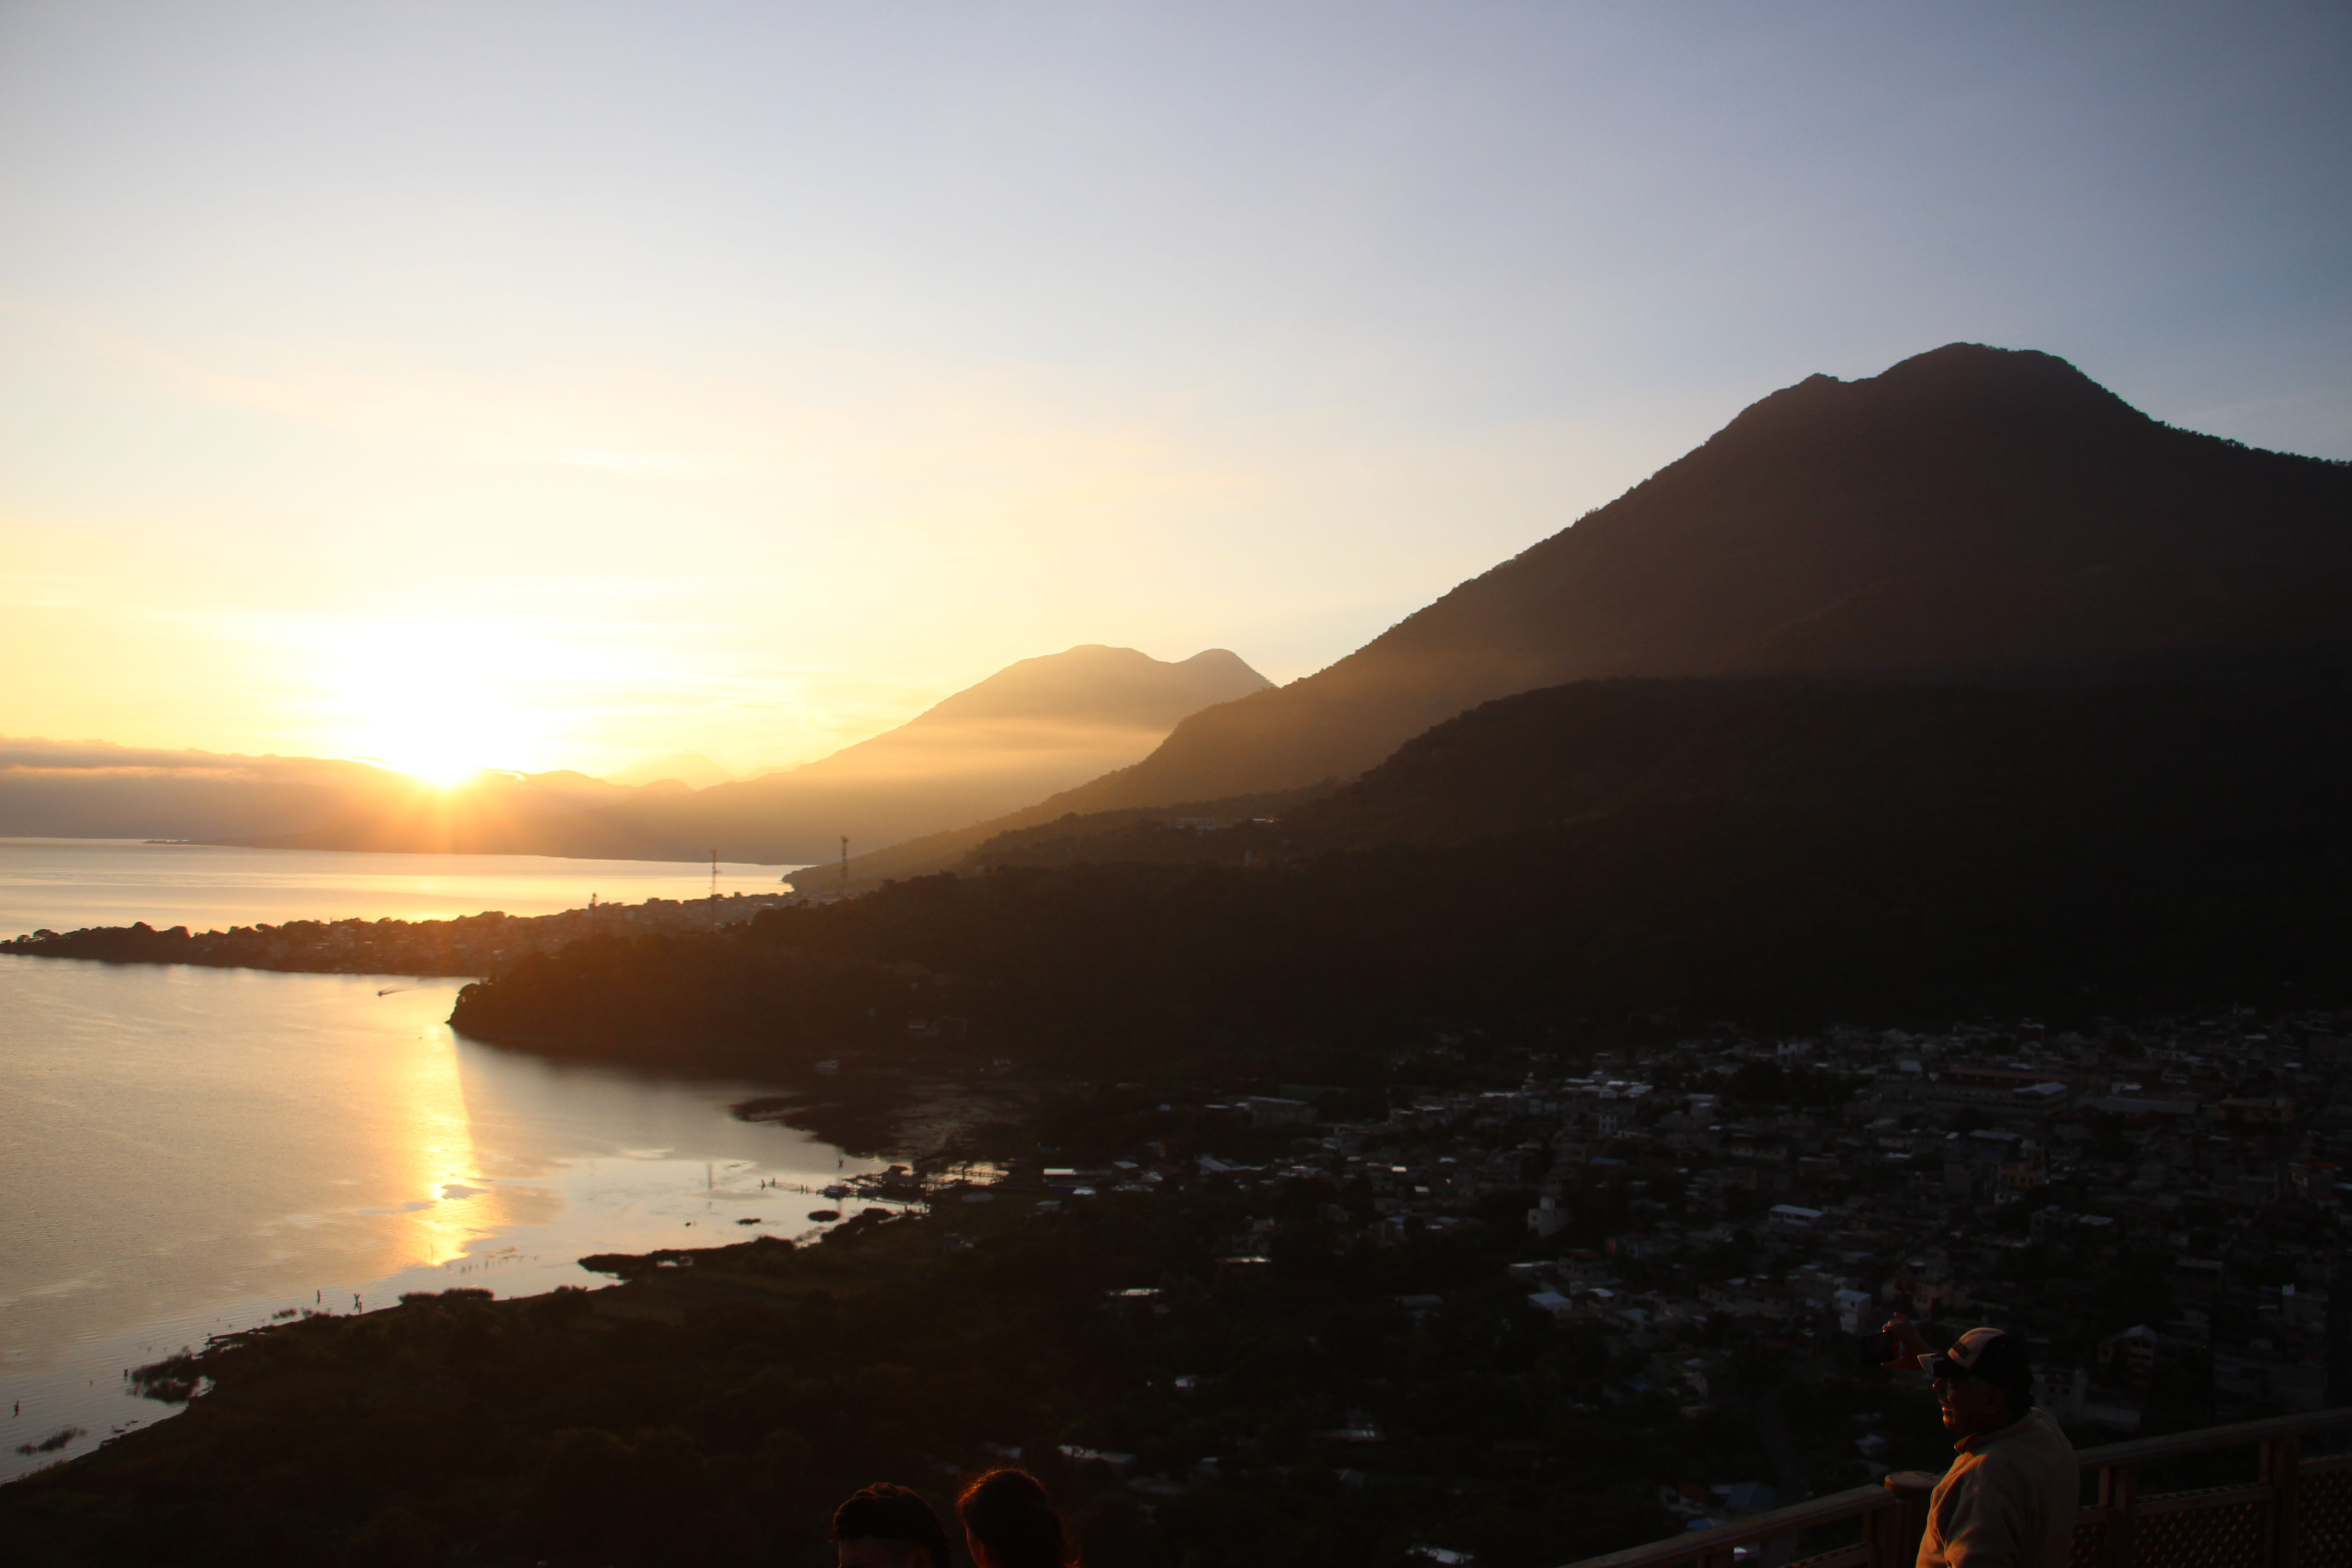  Locales y turistas disfrutan ver el amanecer desde el mirador cerro Kaqasiiwaan.